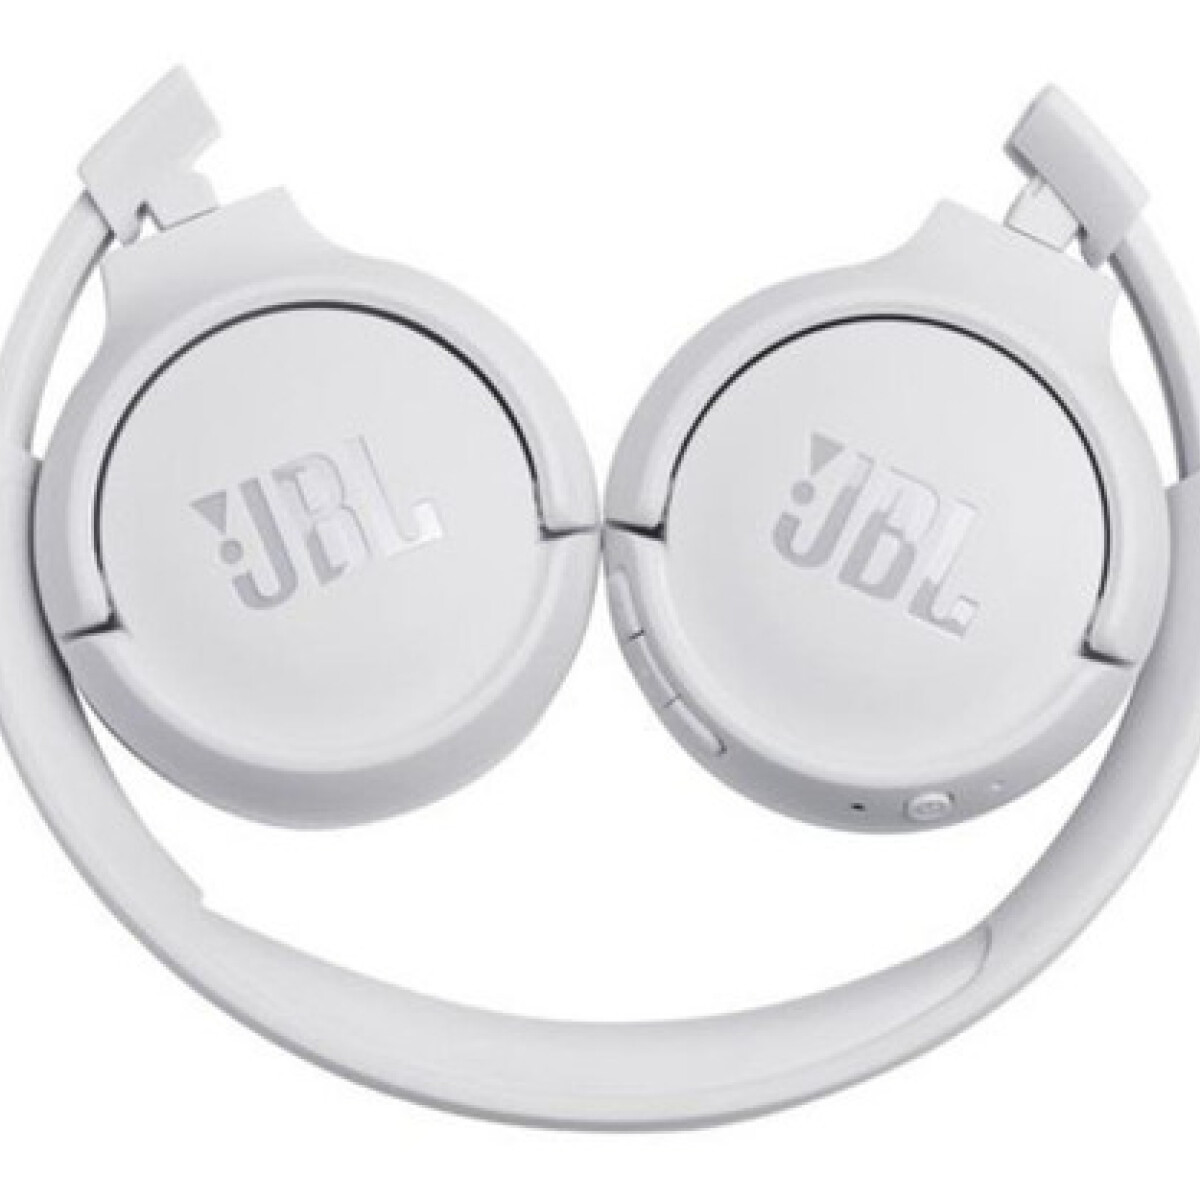 Jbl t500 auricular on-ear con cable Blanco